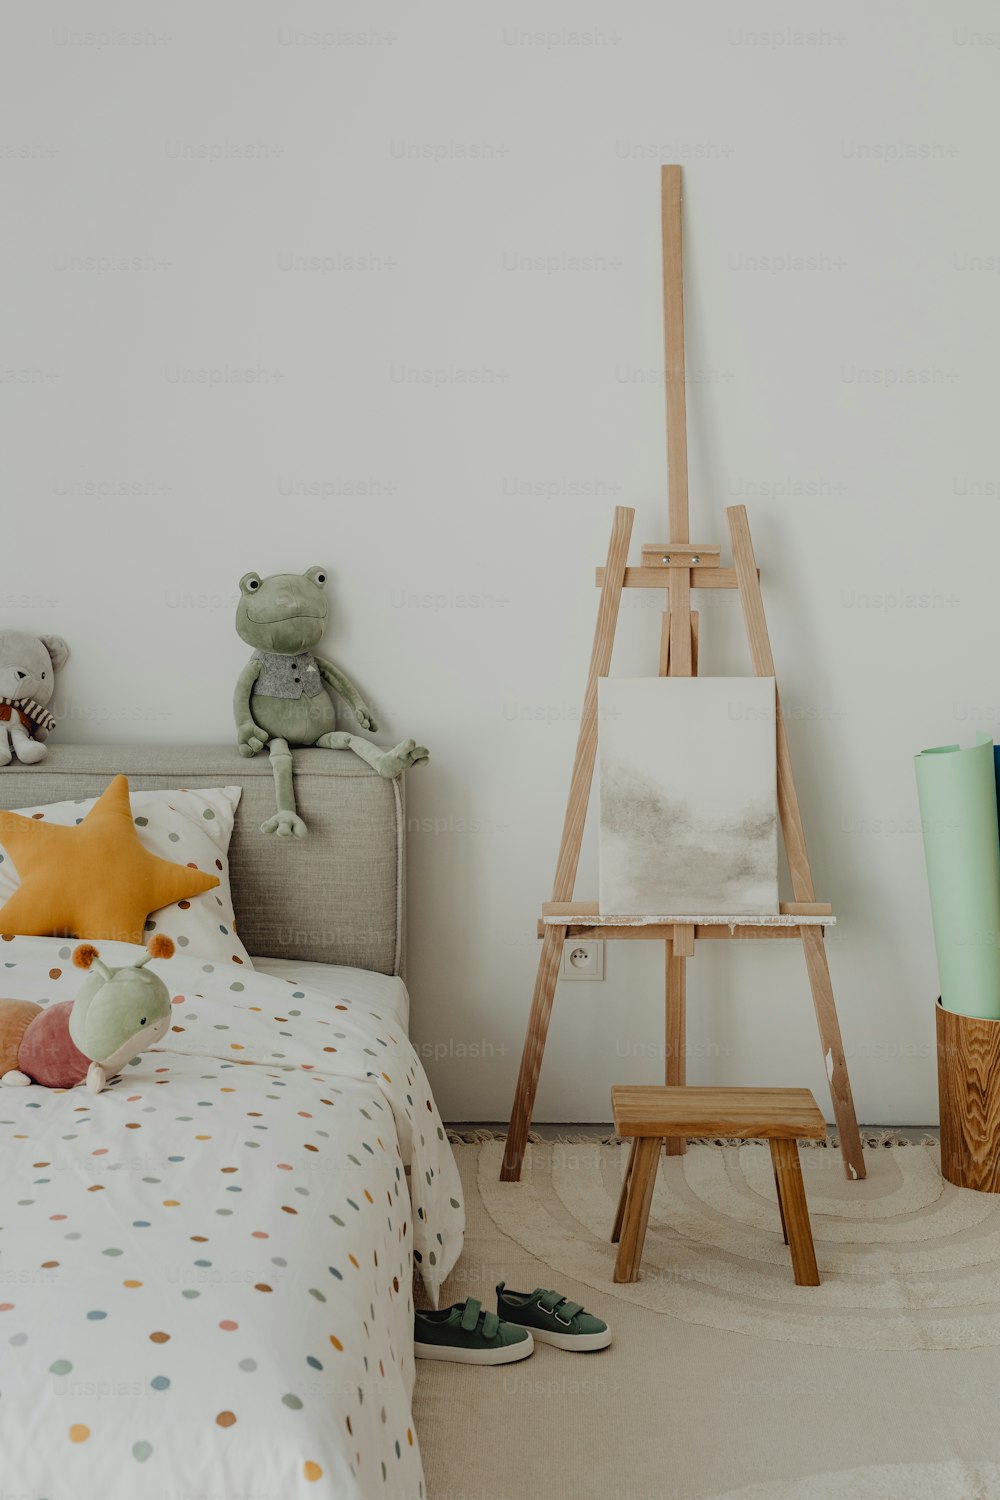 una camera da letto per bambini con un orsacchiotto e un cavalletto da pittura